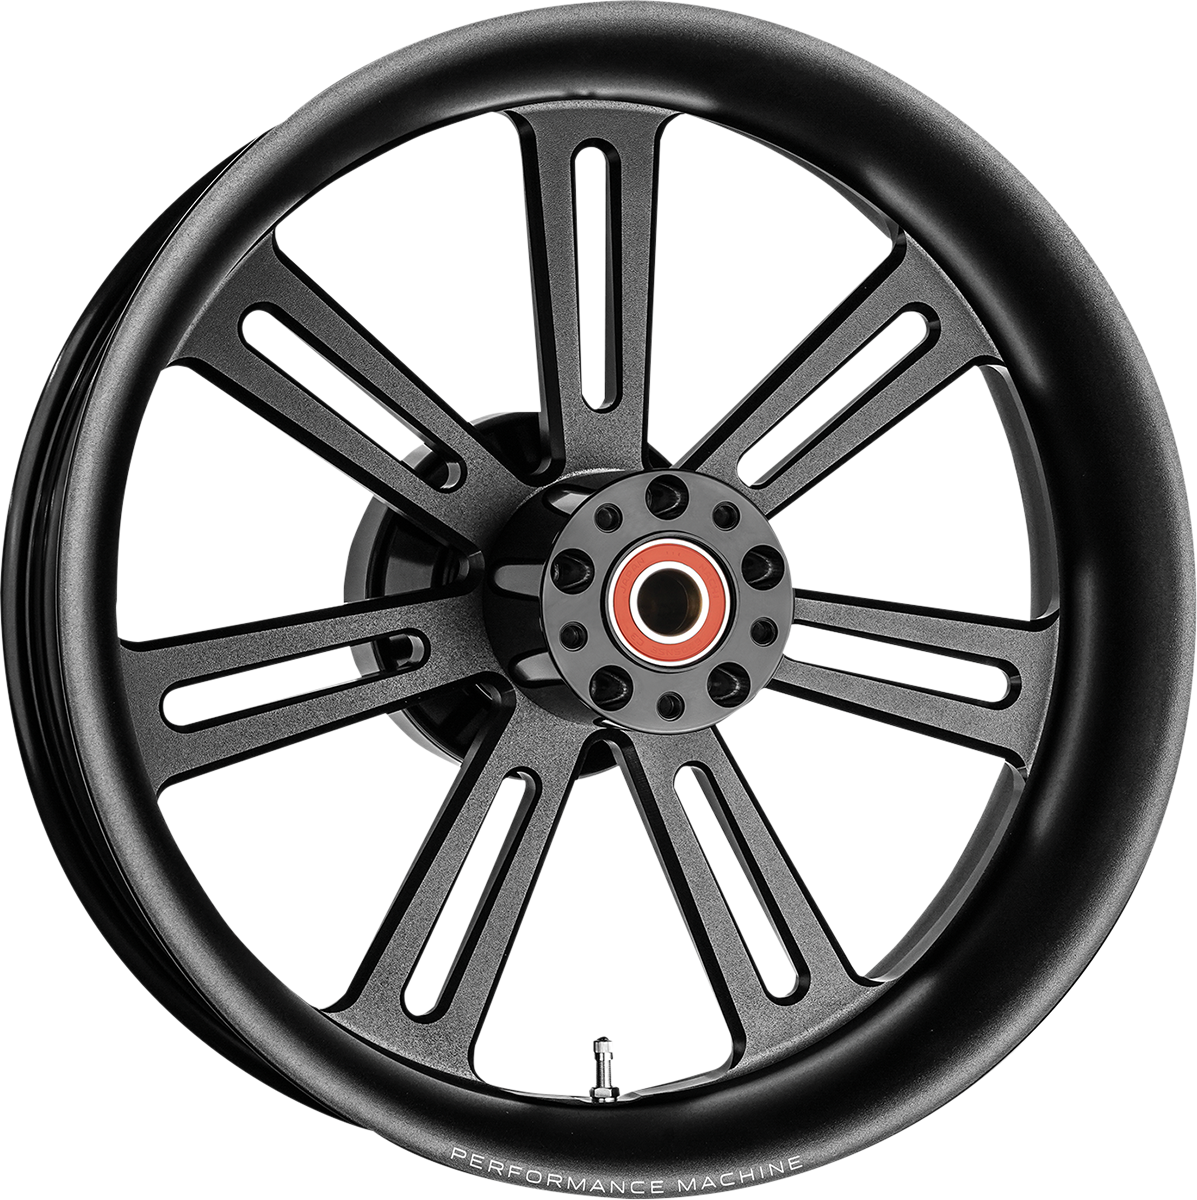 Sierra Wheel - Rear/Single Disc - No ABS - Black - 18" x 5.50"